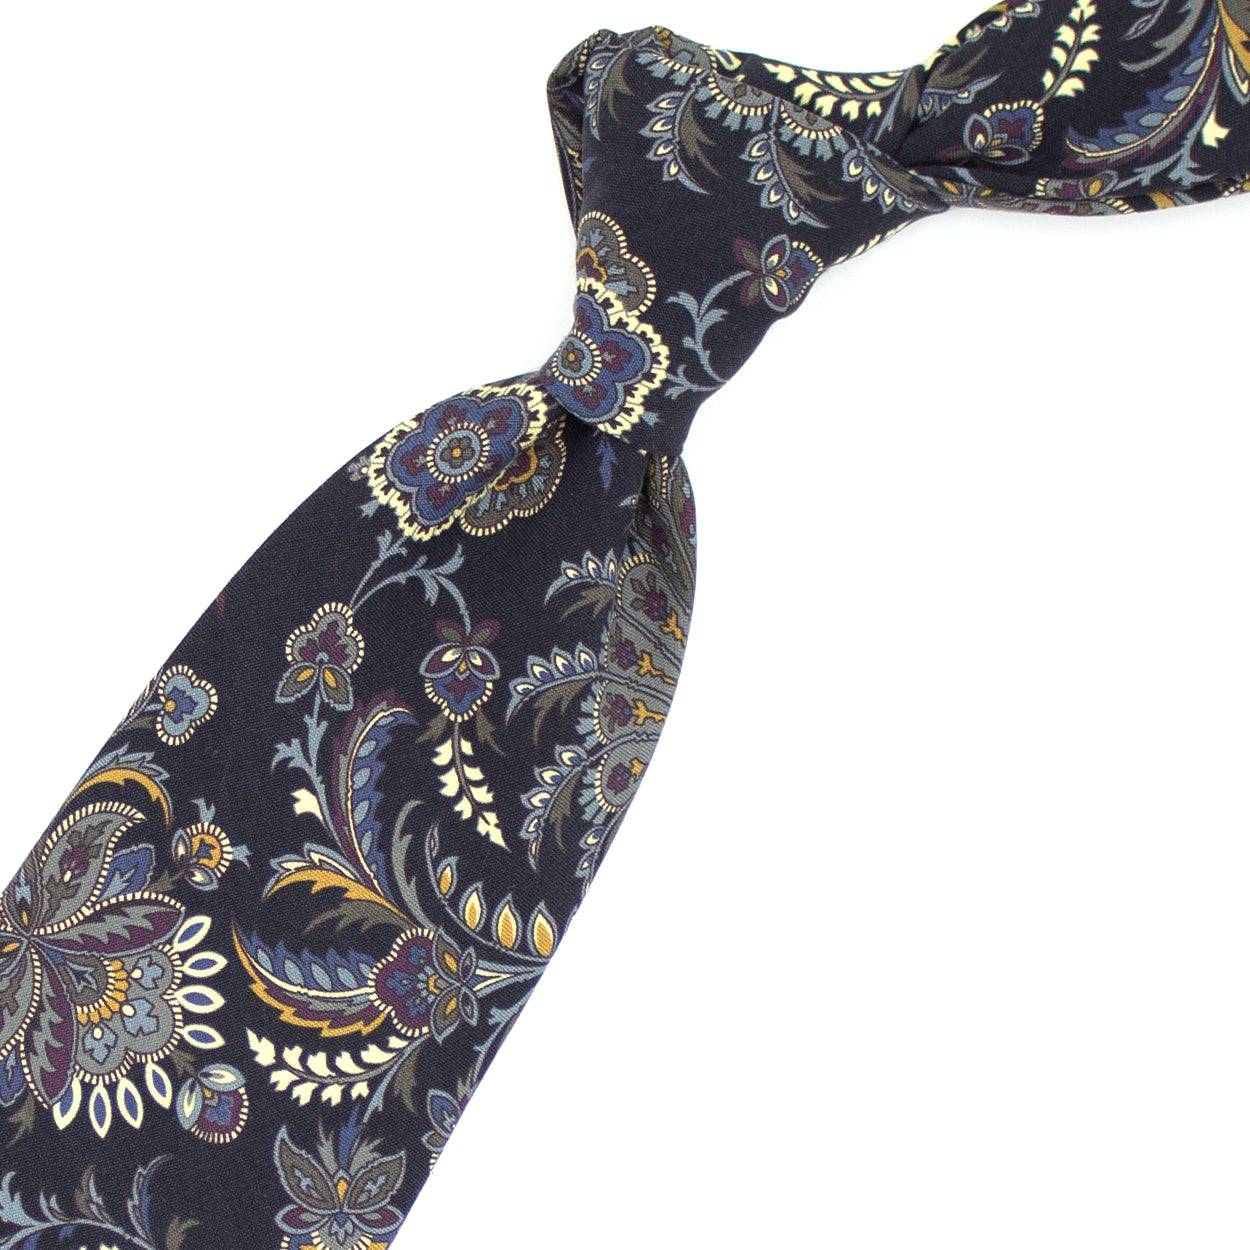 Cravatta blu con pattern floreale